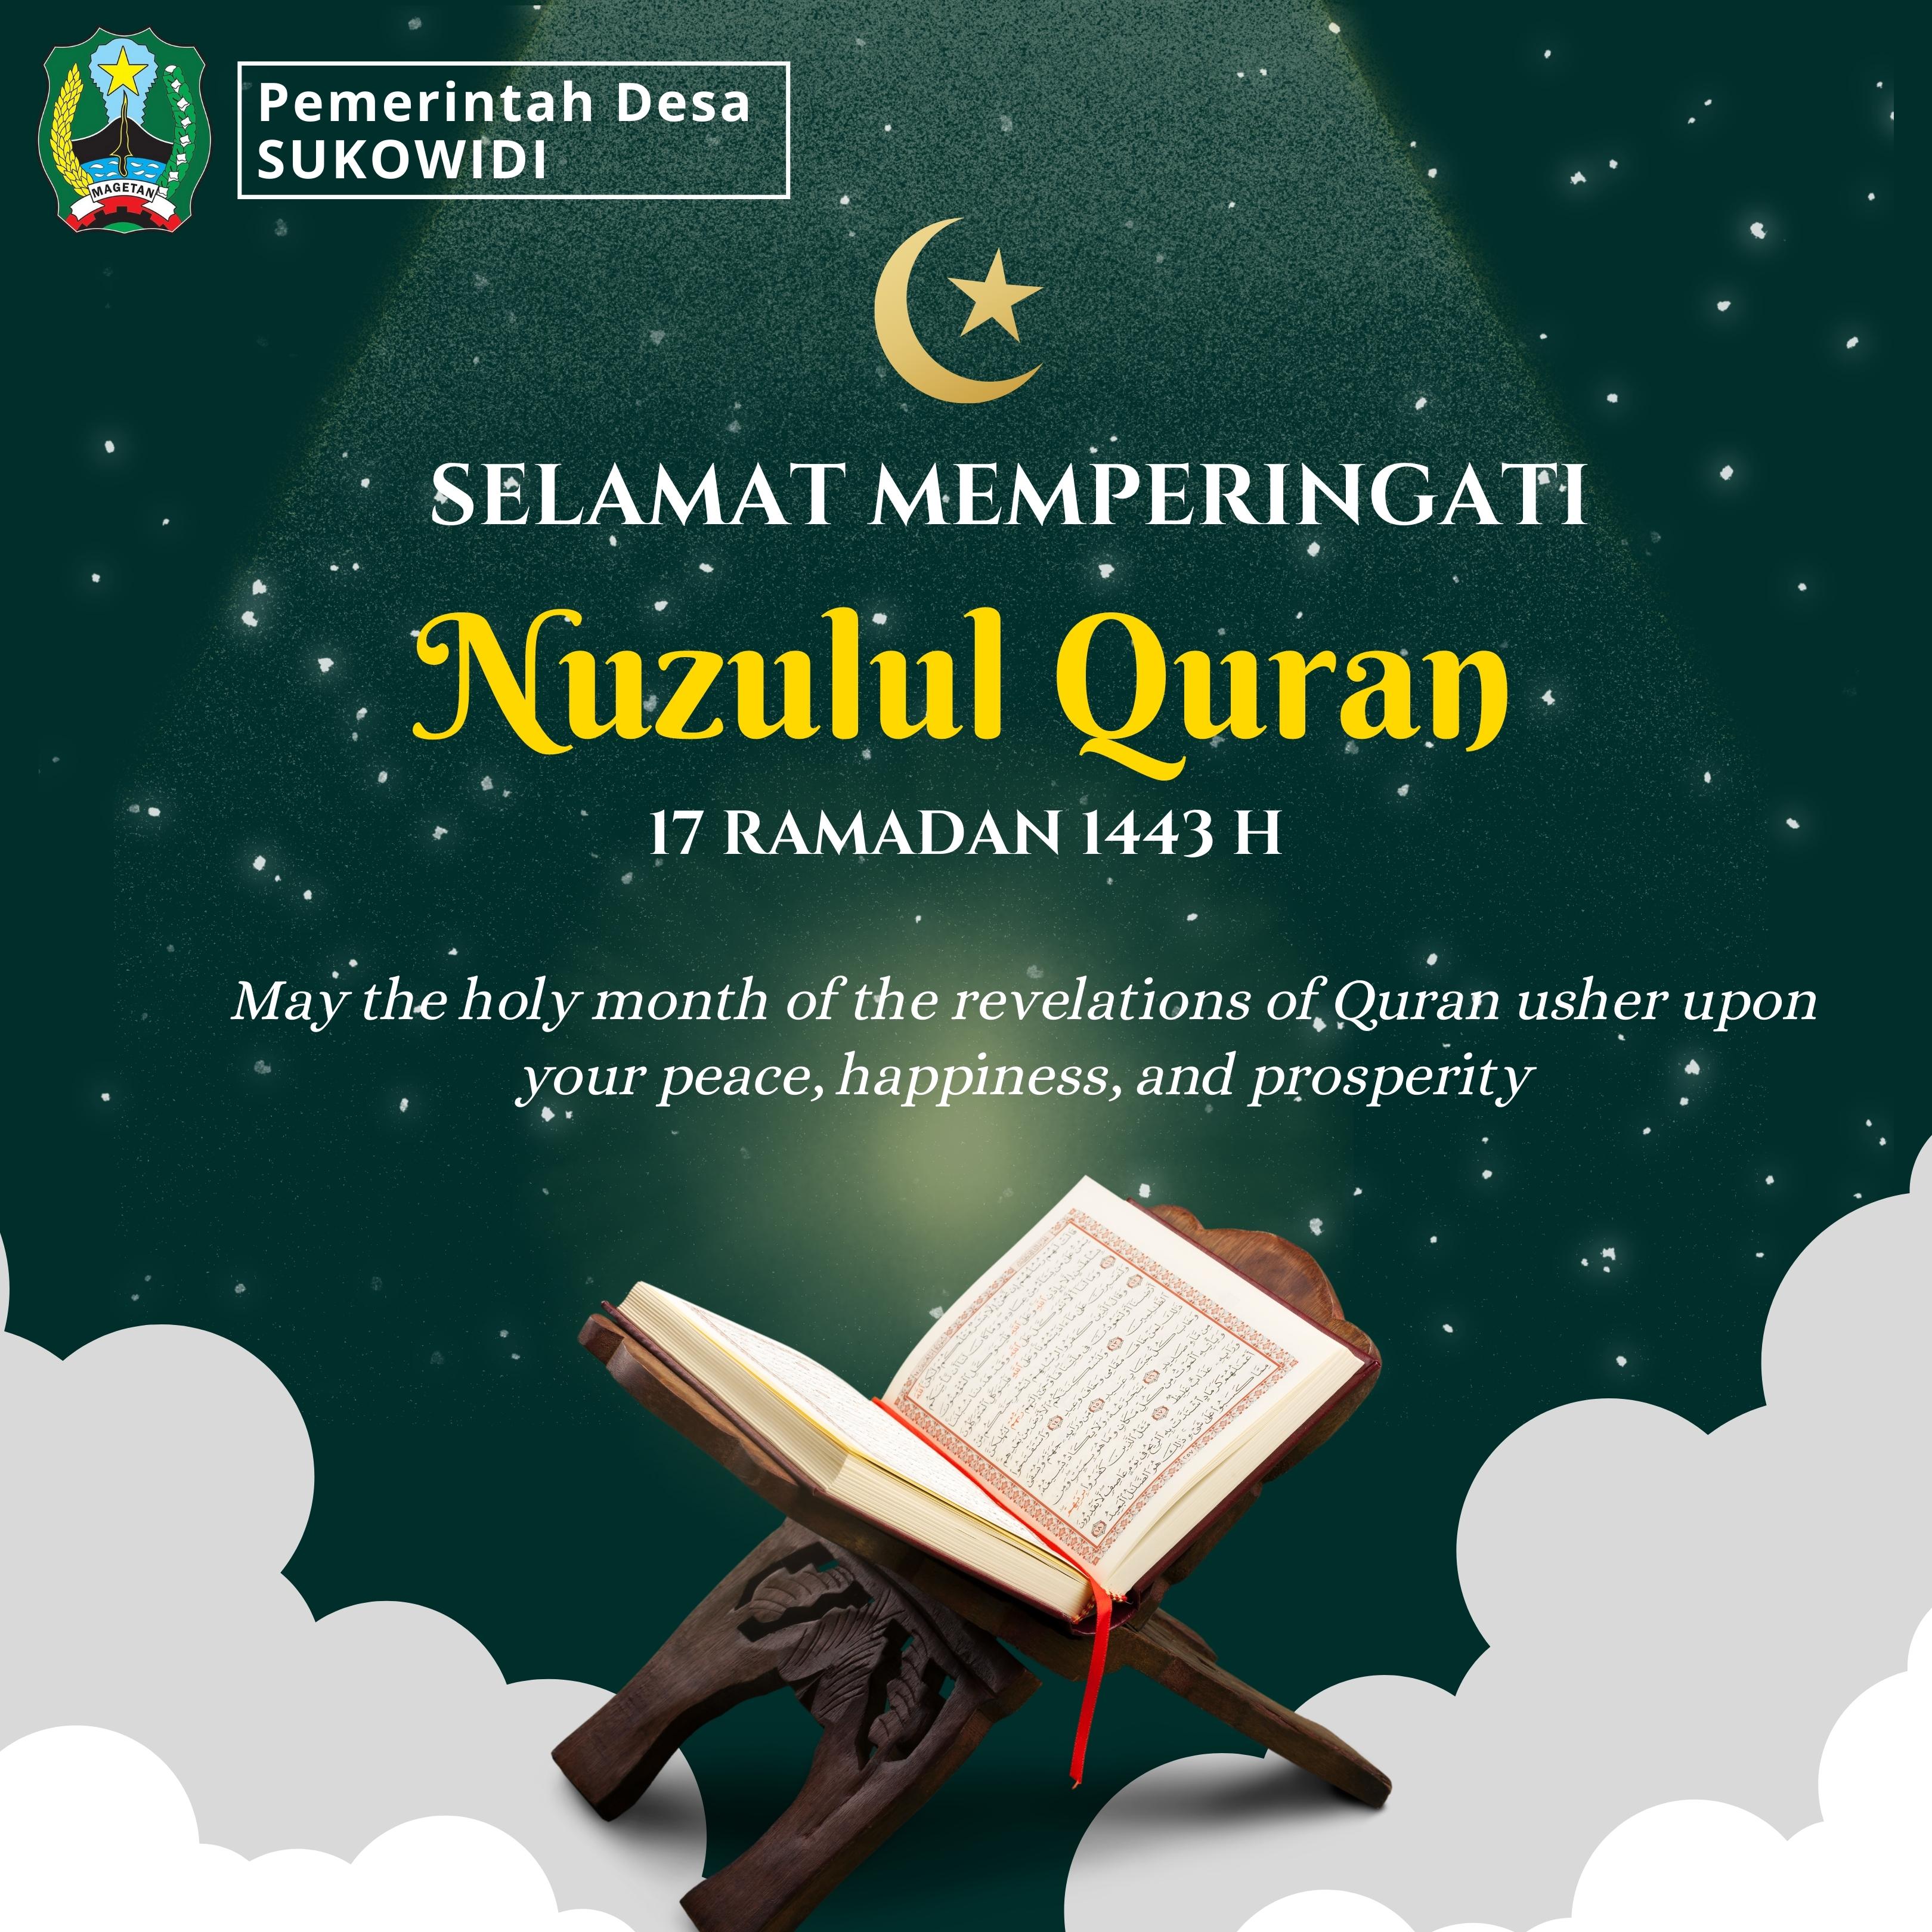 Contoh Spanduk Nuzulul Quran Kumpulan Gambar Spanduk - vrogue.co